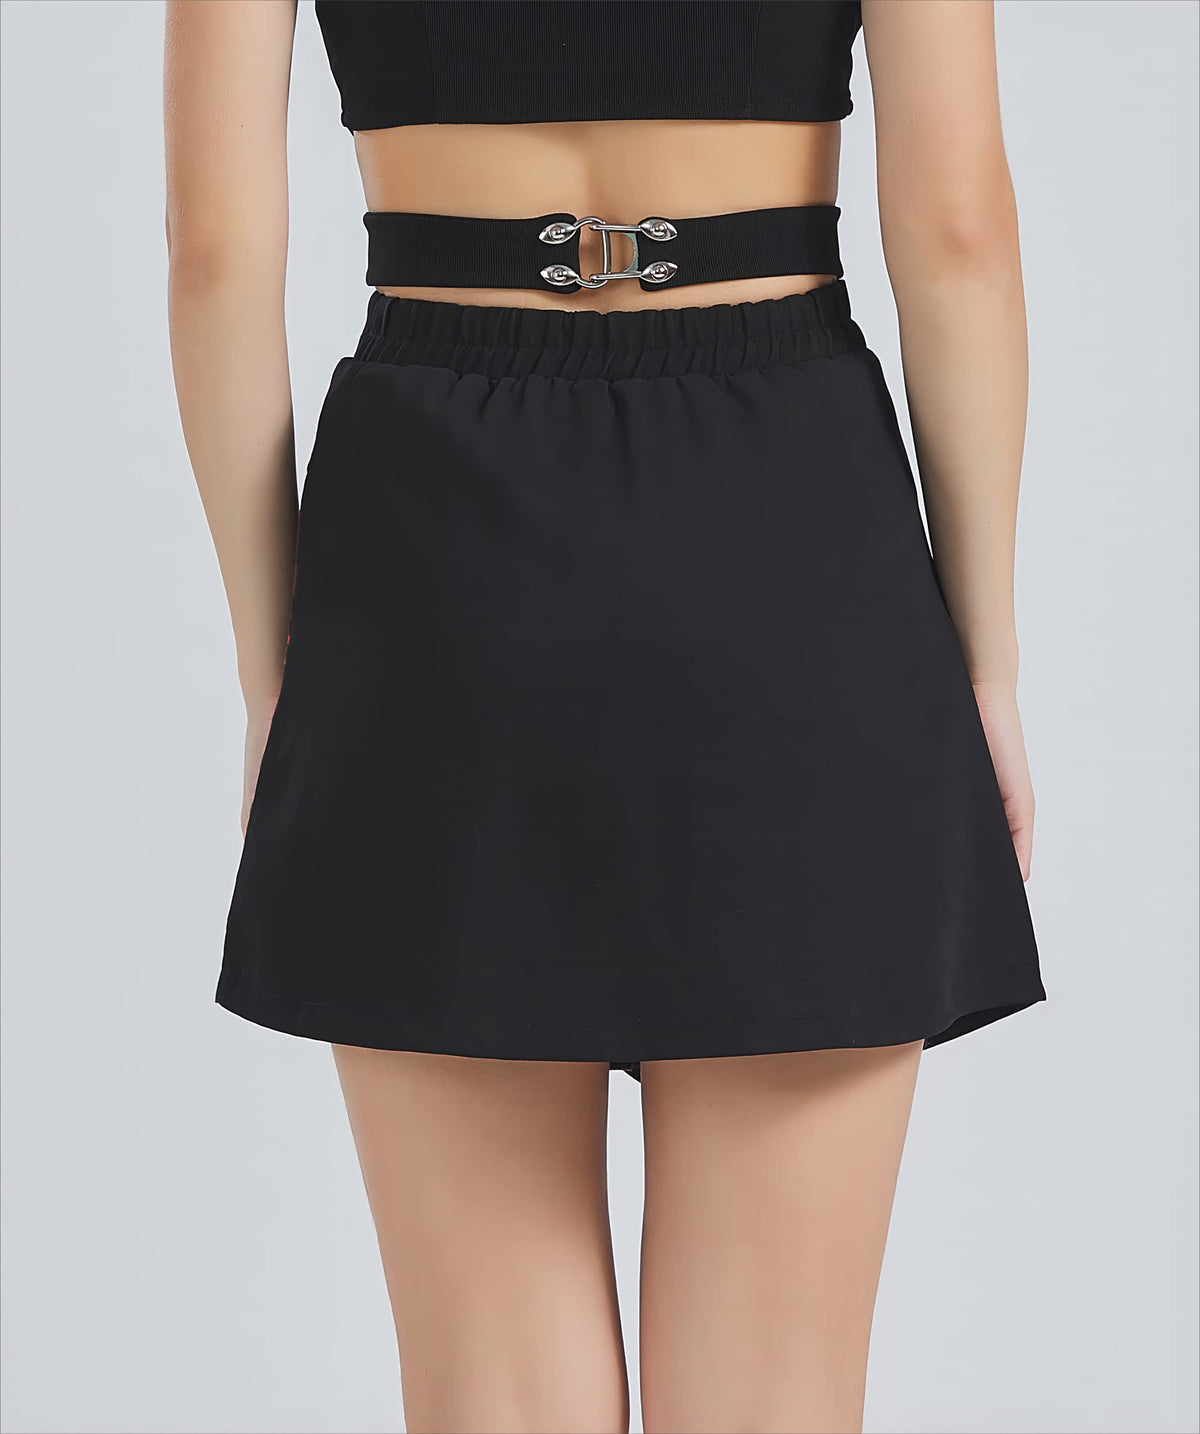 Women&#39;s Gothic Skirt Basic Pleated Skirt Plaid Skirt Casual Skirt Black Mini Knee-Length Skirts with Shorts